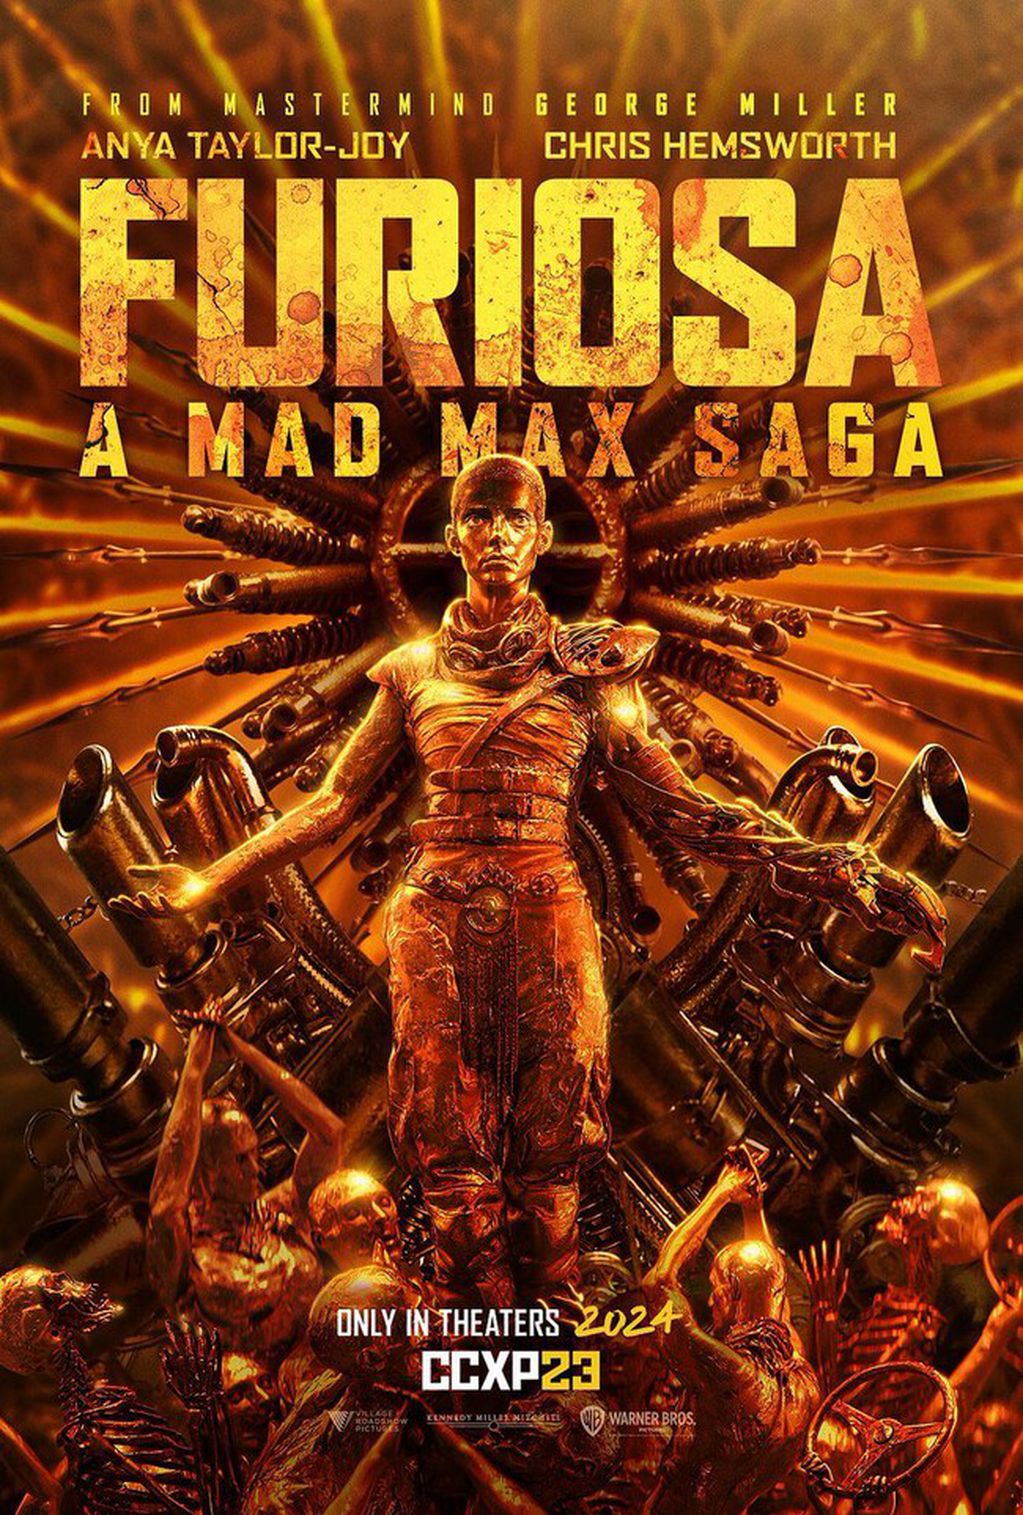 Mad Max tendrá su nueva entrega en mayo con "Furiosa" / WEB